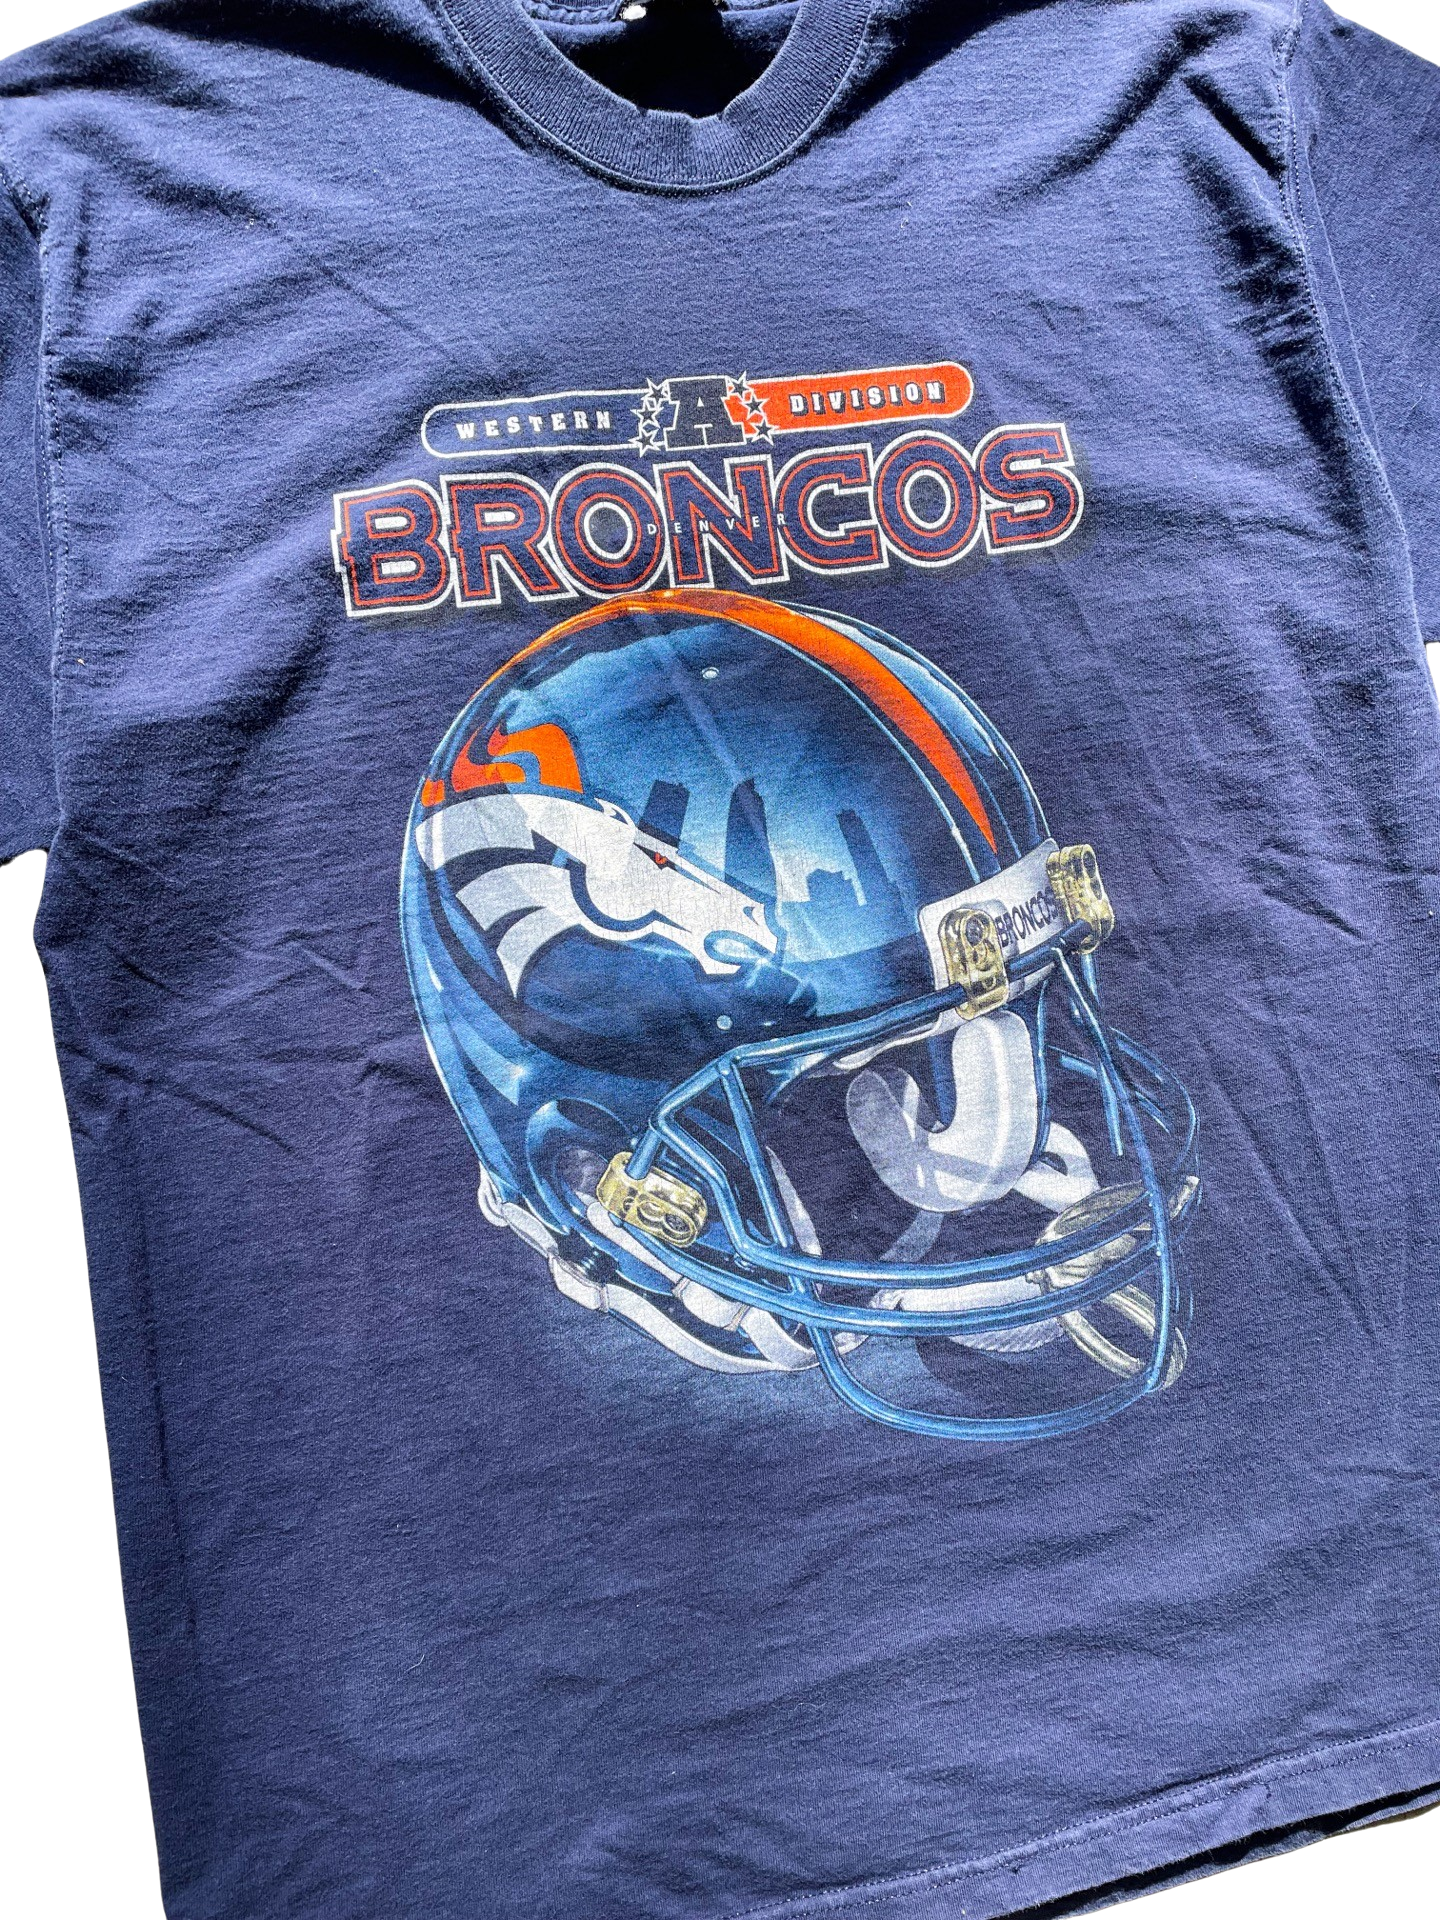 Vintage Denver Broncos t-shirt